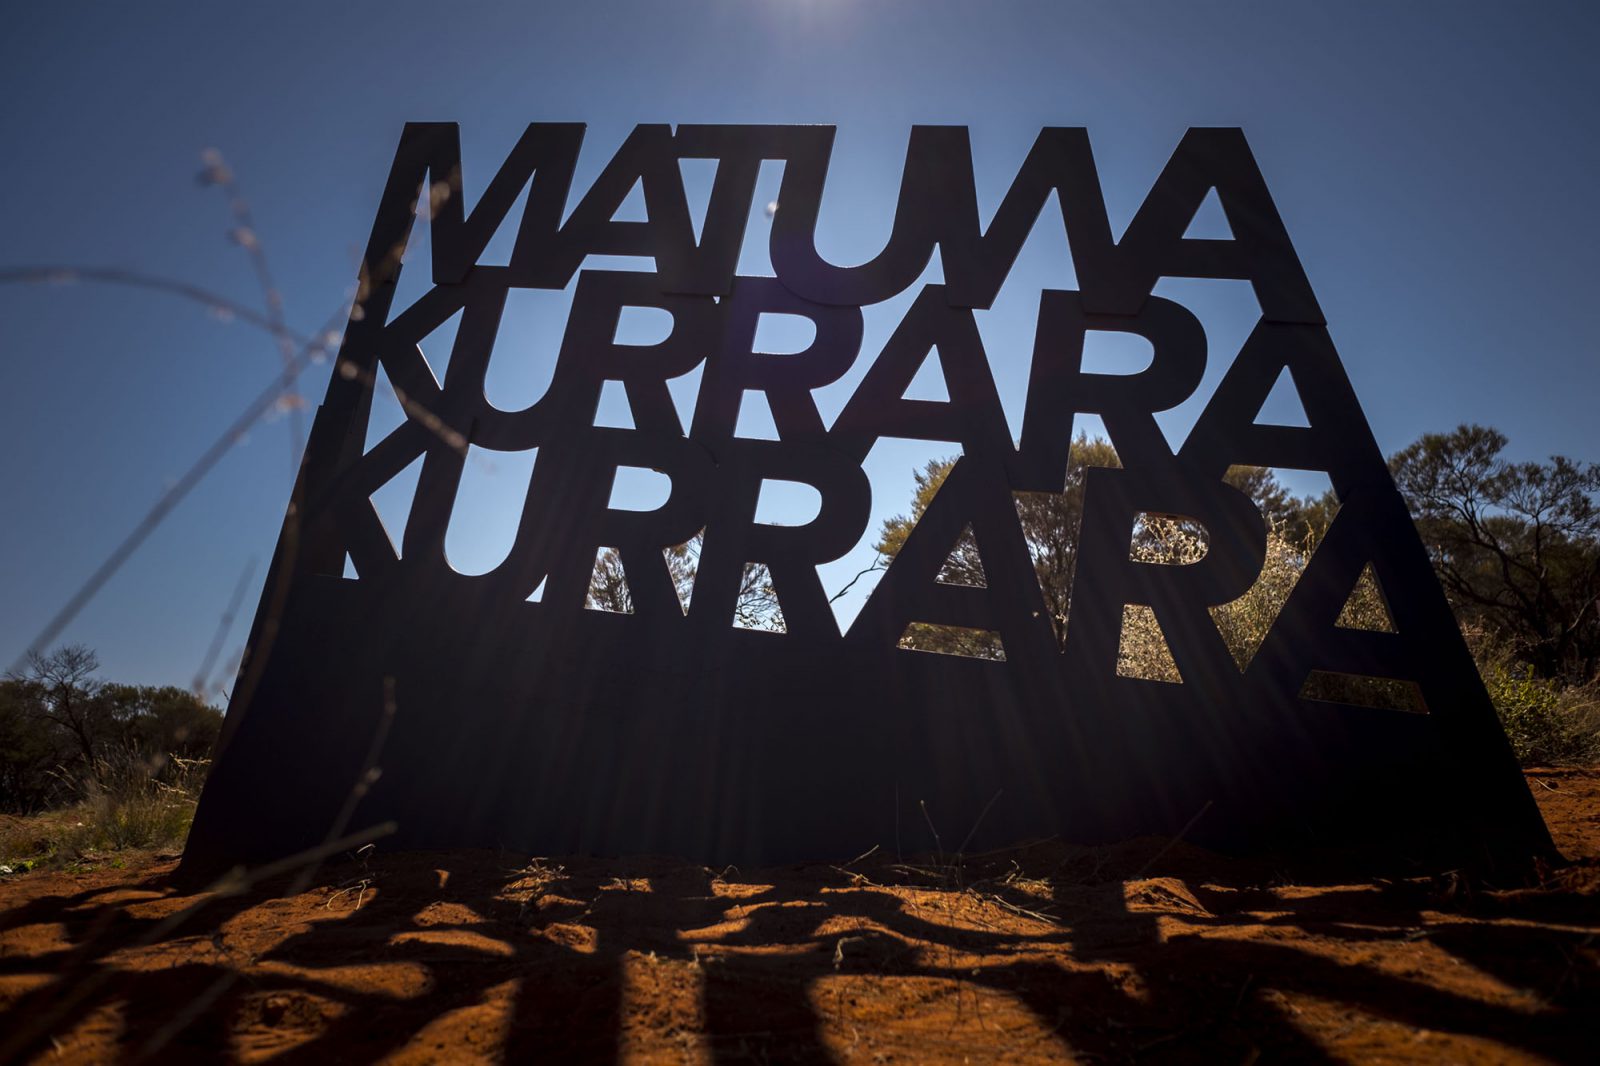 1-matuwa-kurrara-kurrara-interpretative-signage